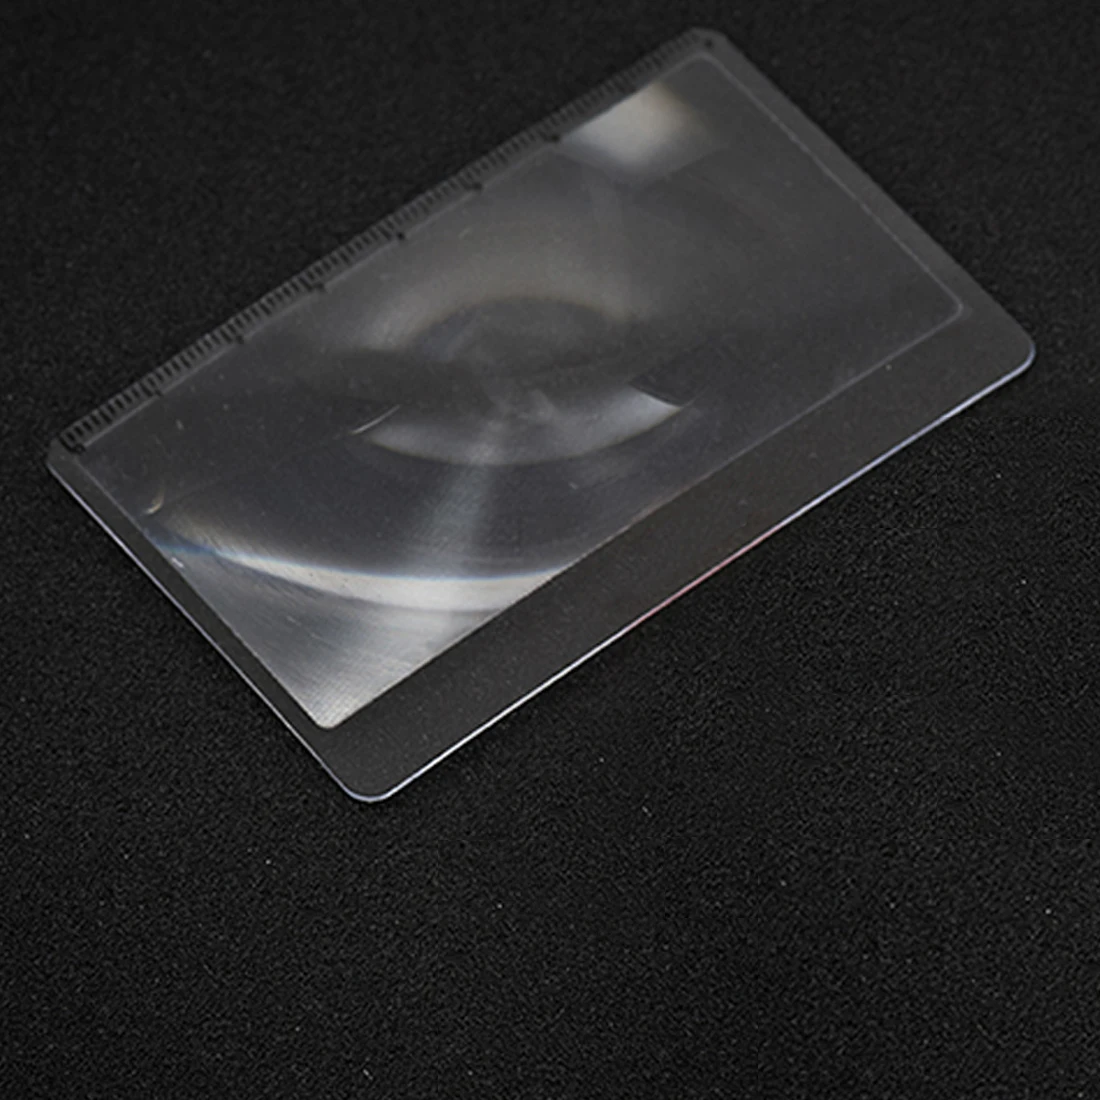 3 X увеличительная линза Френеля 8,5x5,5x0,45 см размер карманной кредитной карты прозрачное увеличительное стекло